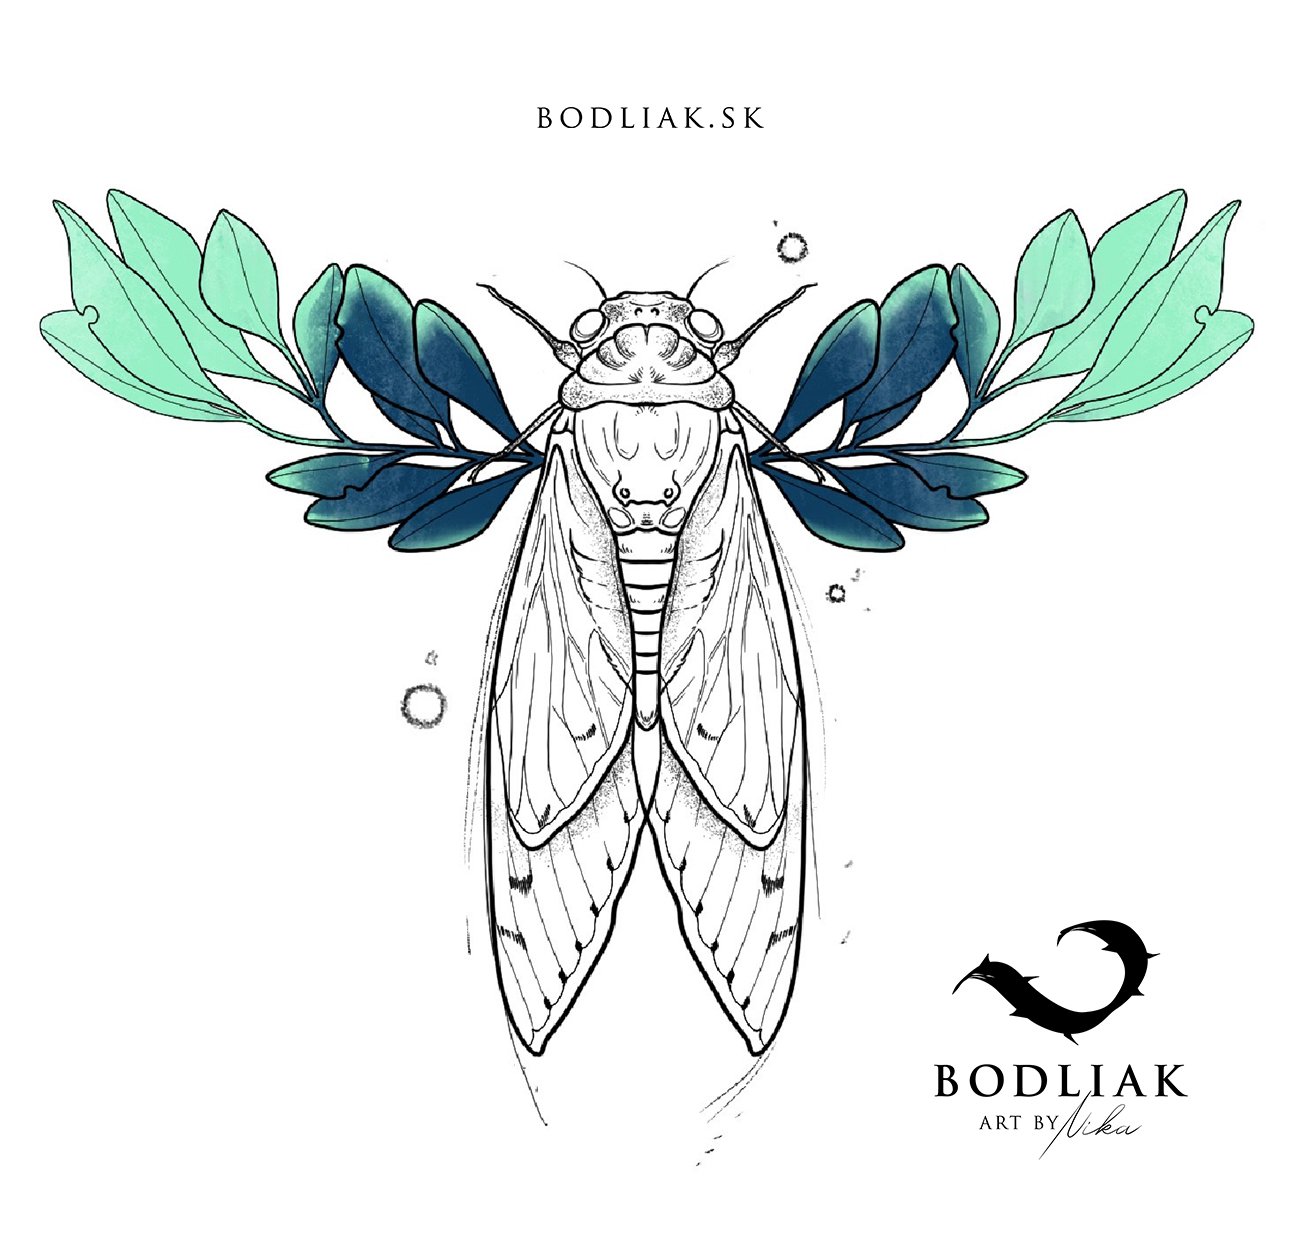  bodliak-bodliaktattoo-motiv-design-original-nika-tetovanie-tattoo-colour-colourtattoo-priroda-hmyz-nature 